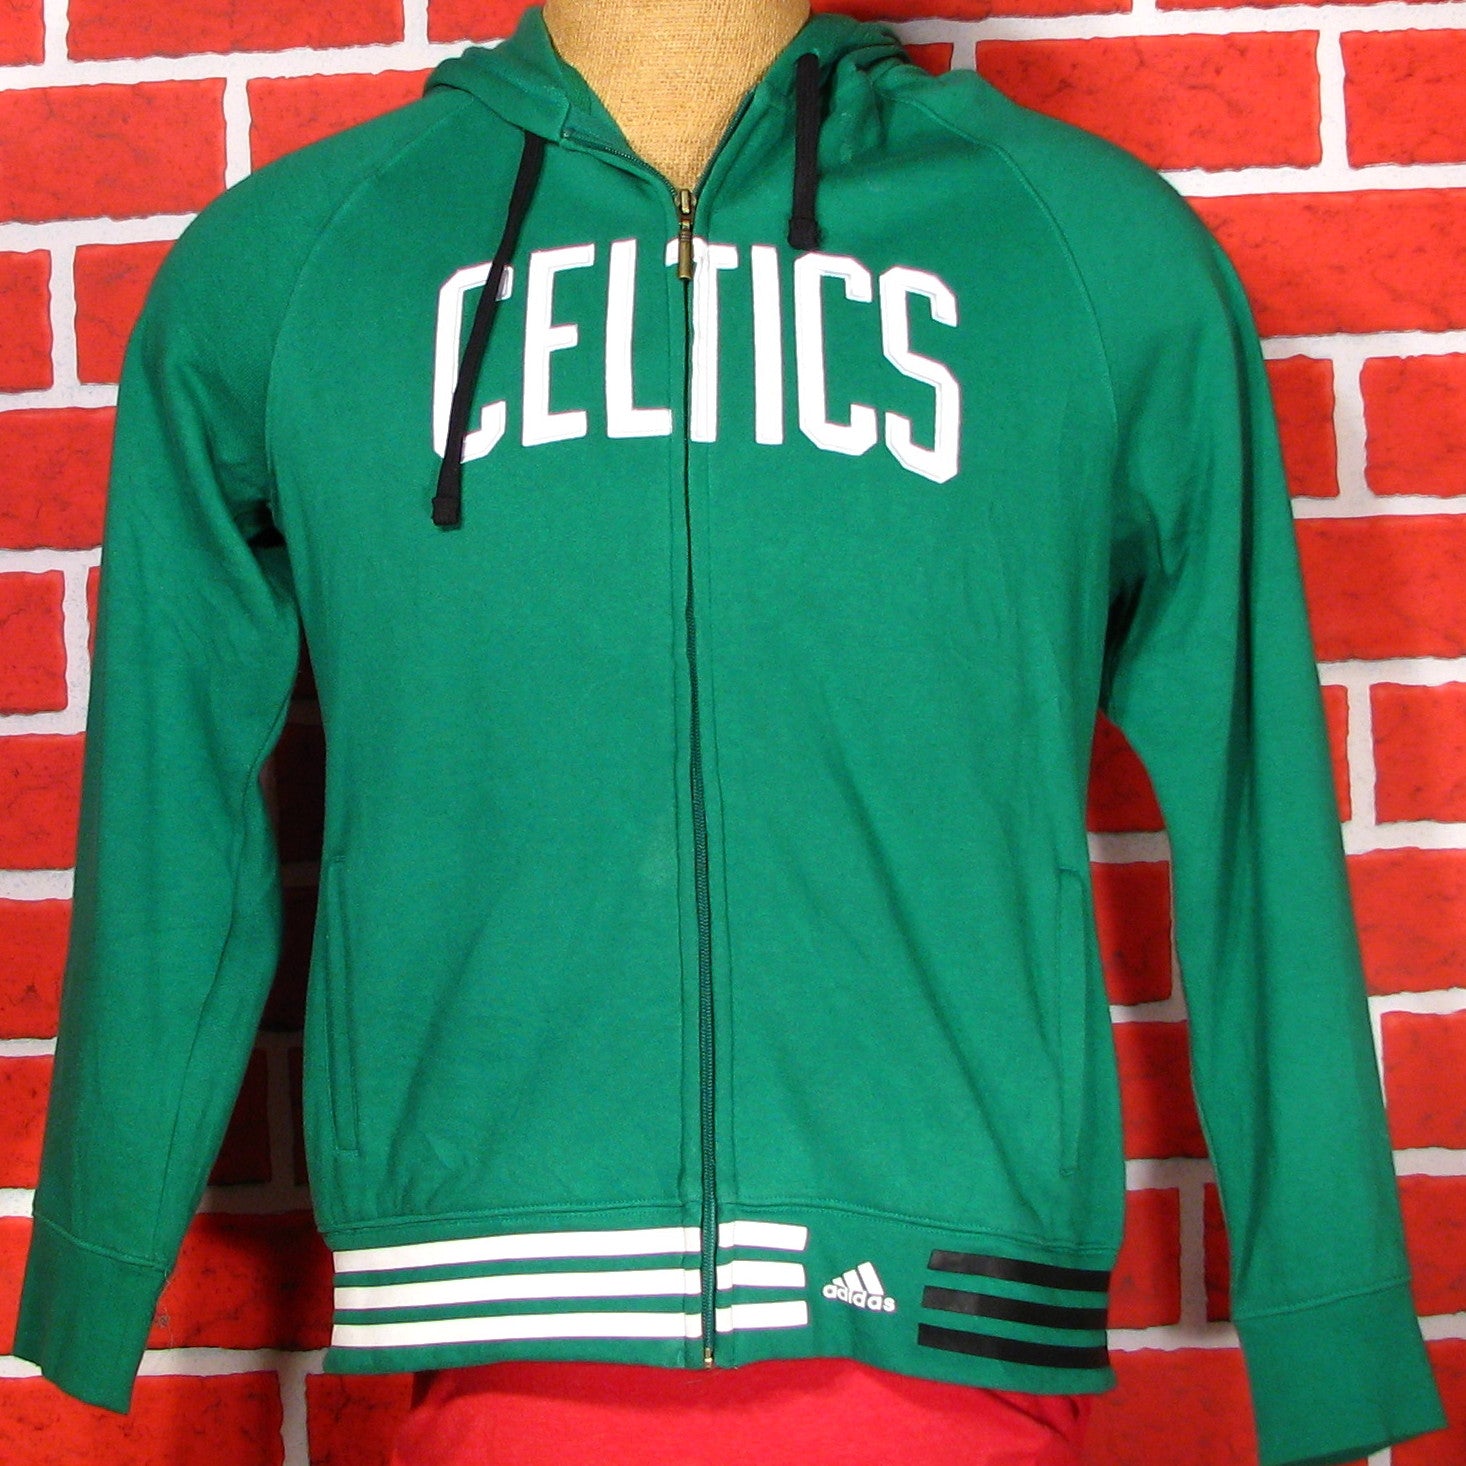 adidas boston celtics hoodie